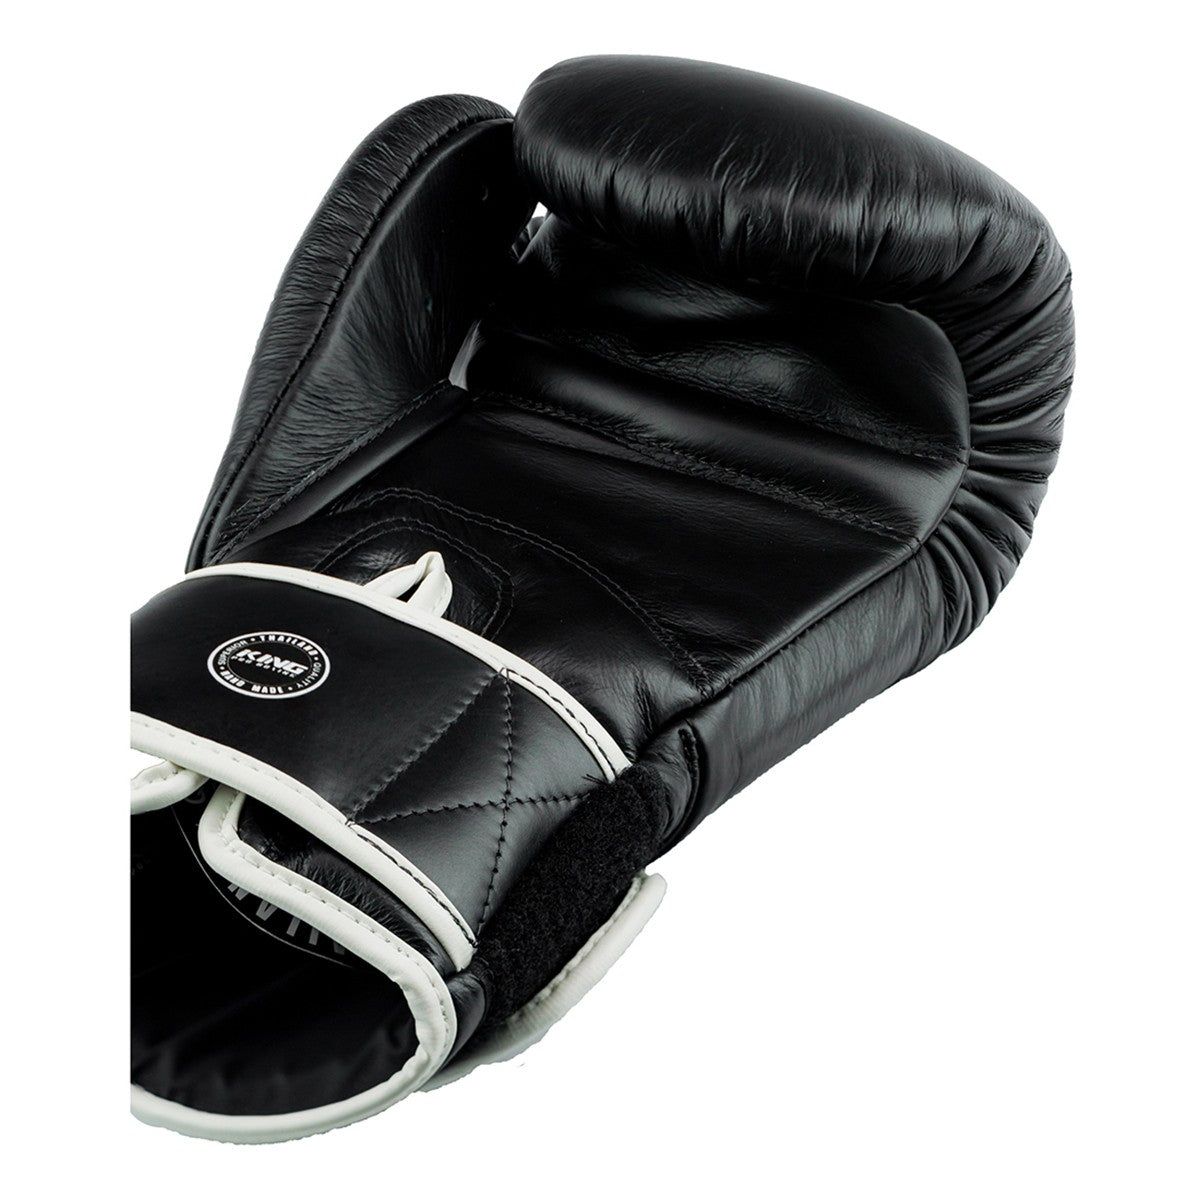 Gants de boxe King Pro Boxing - Noir